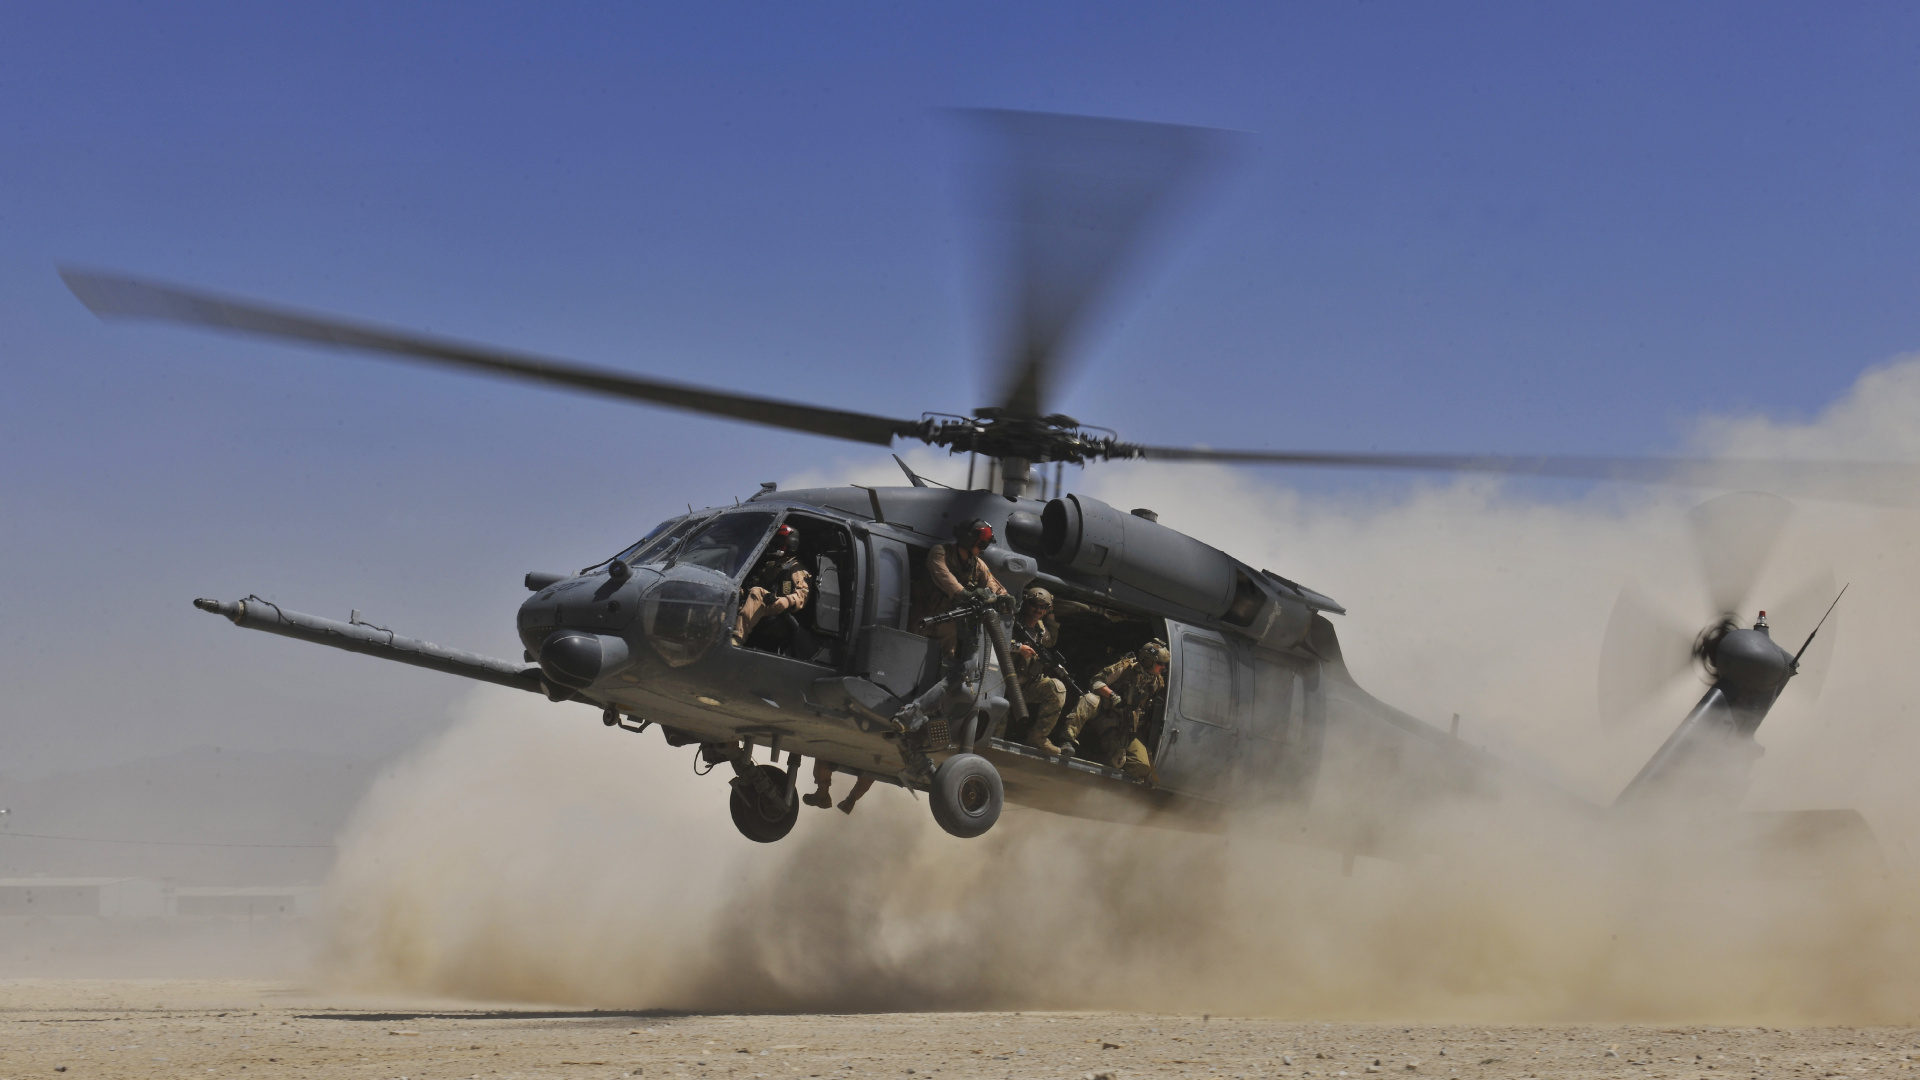 直升机, 军用直升机, 用直升机, 直升机转子的, 旋翼飞机 壁纸 1920x1080 允许